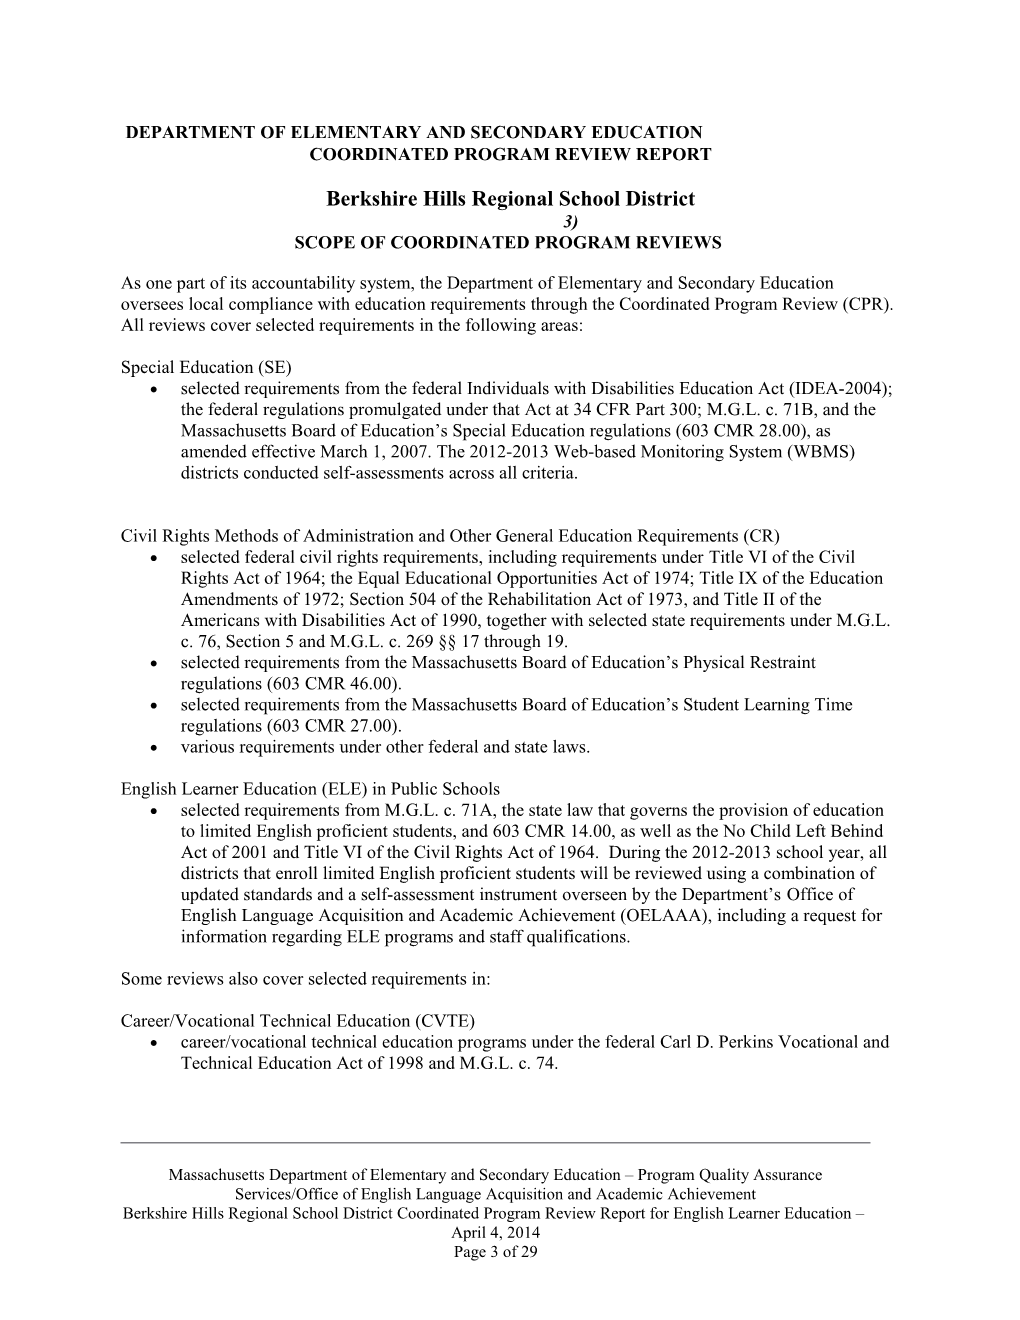 Berkshire Hills CPR Final Report 2013